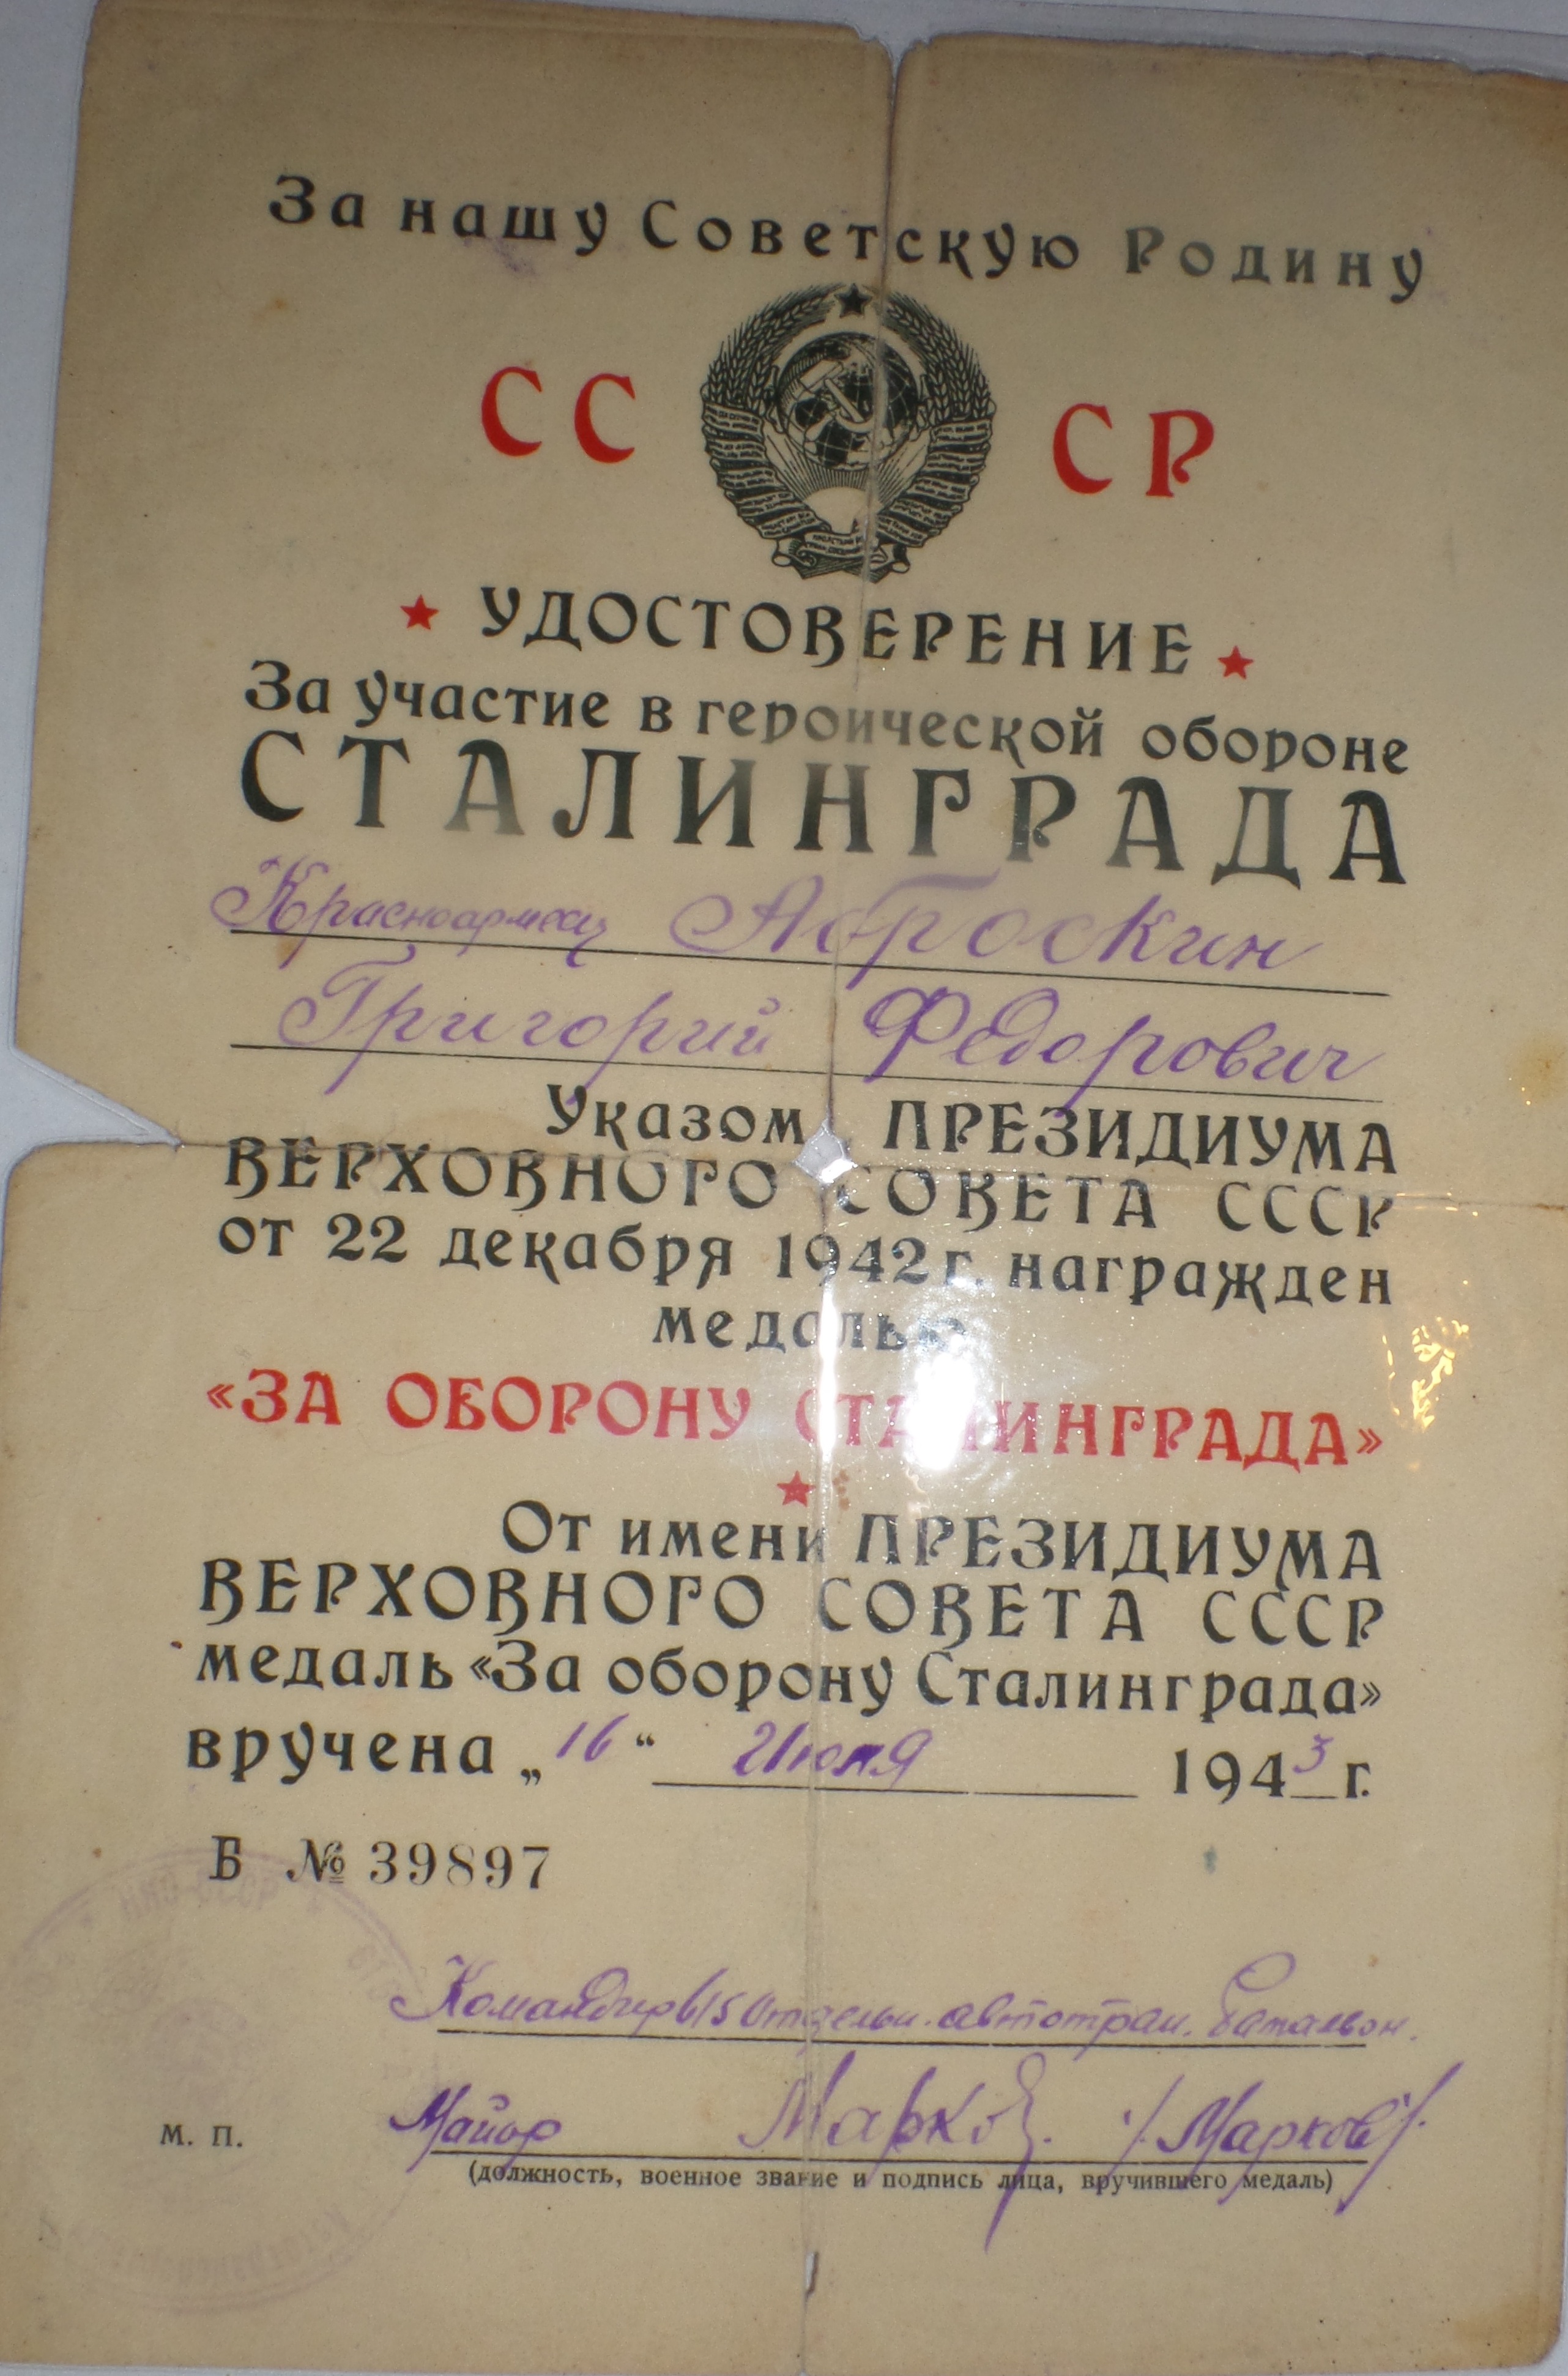 Аброськин Г.Ф. Удостоверение к медали «За оборону Сталинграда», медаль вручена 16 июля 1943 года